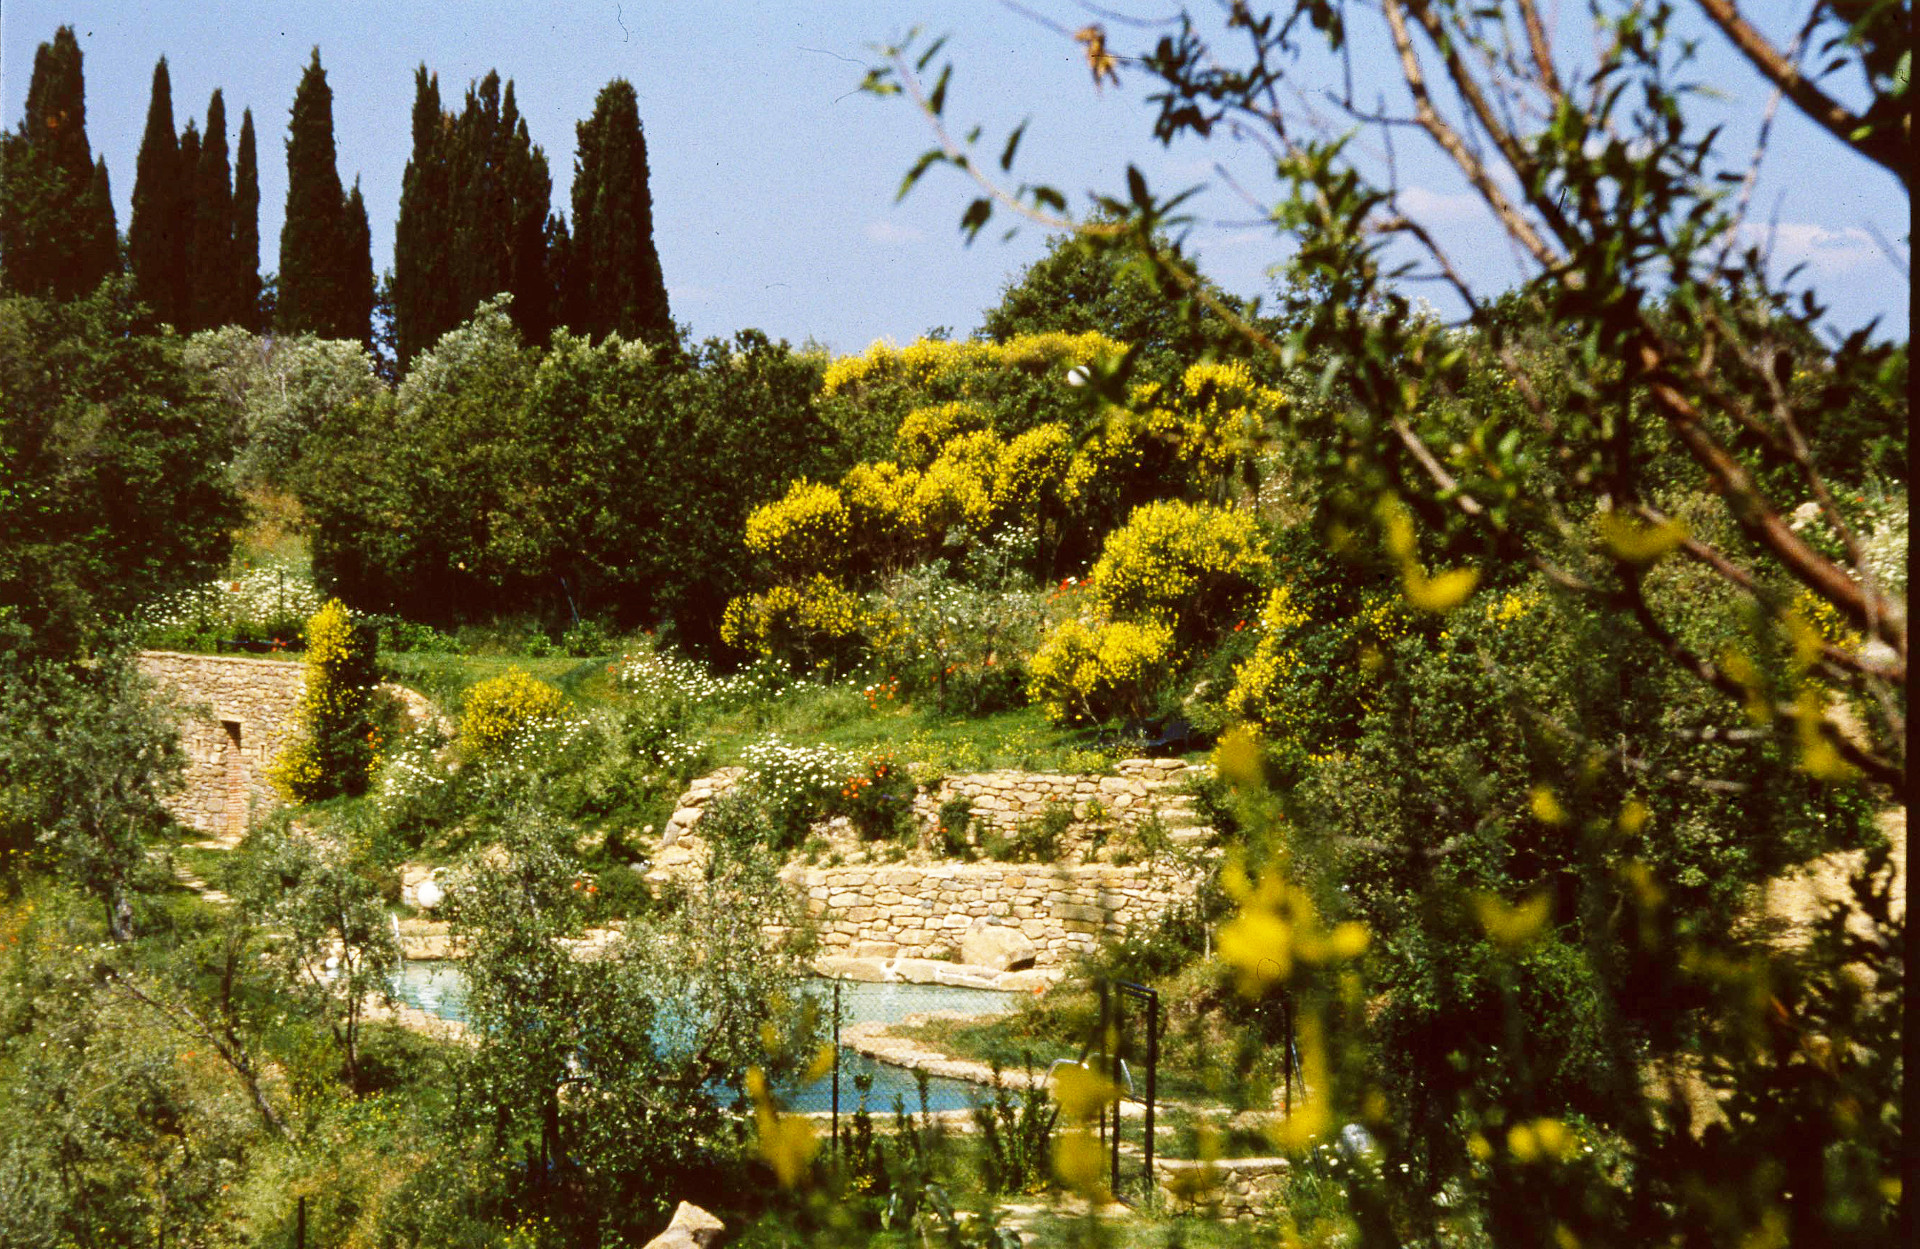 Fulvio Di Rosa: In the garden of Borgo di Sogna